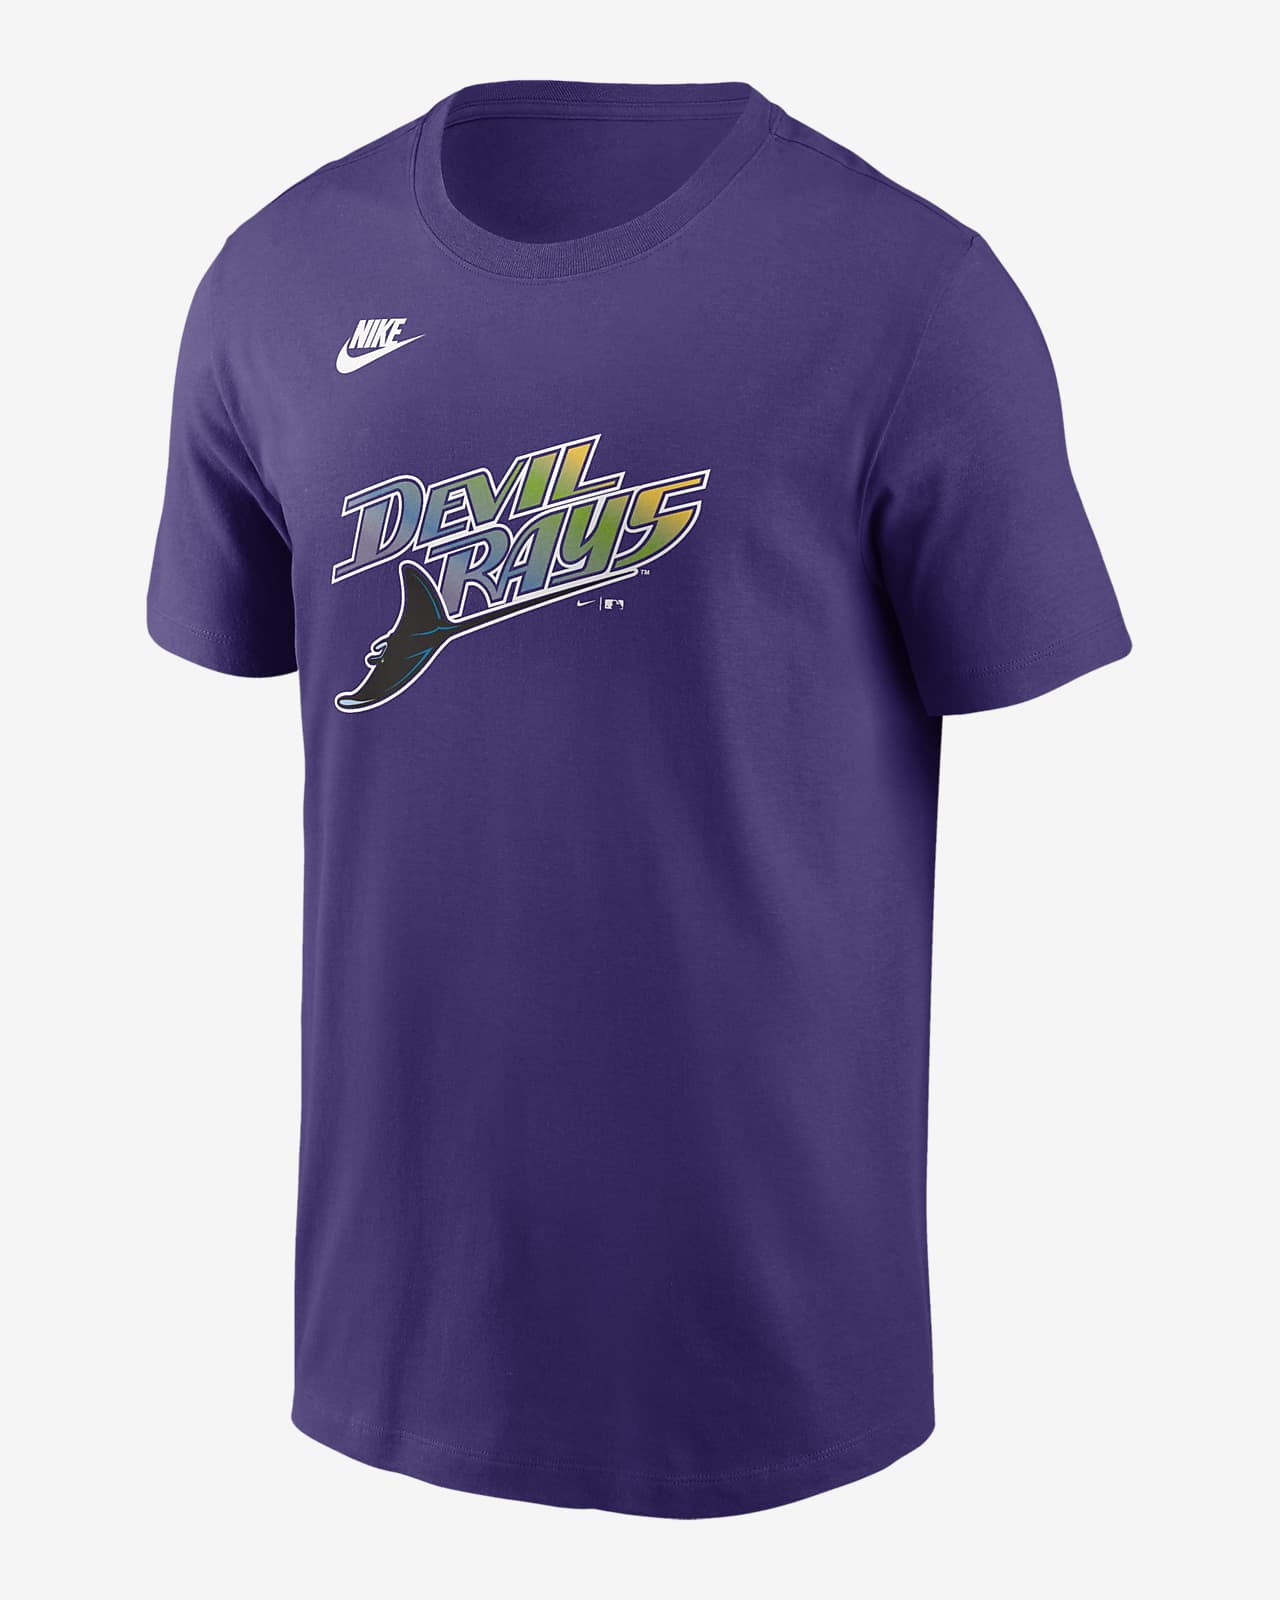 Tampa Bay Rays Cooperstown Logo Men's Nike MLB T-Shirt